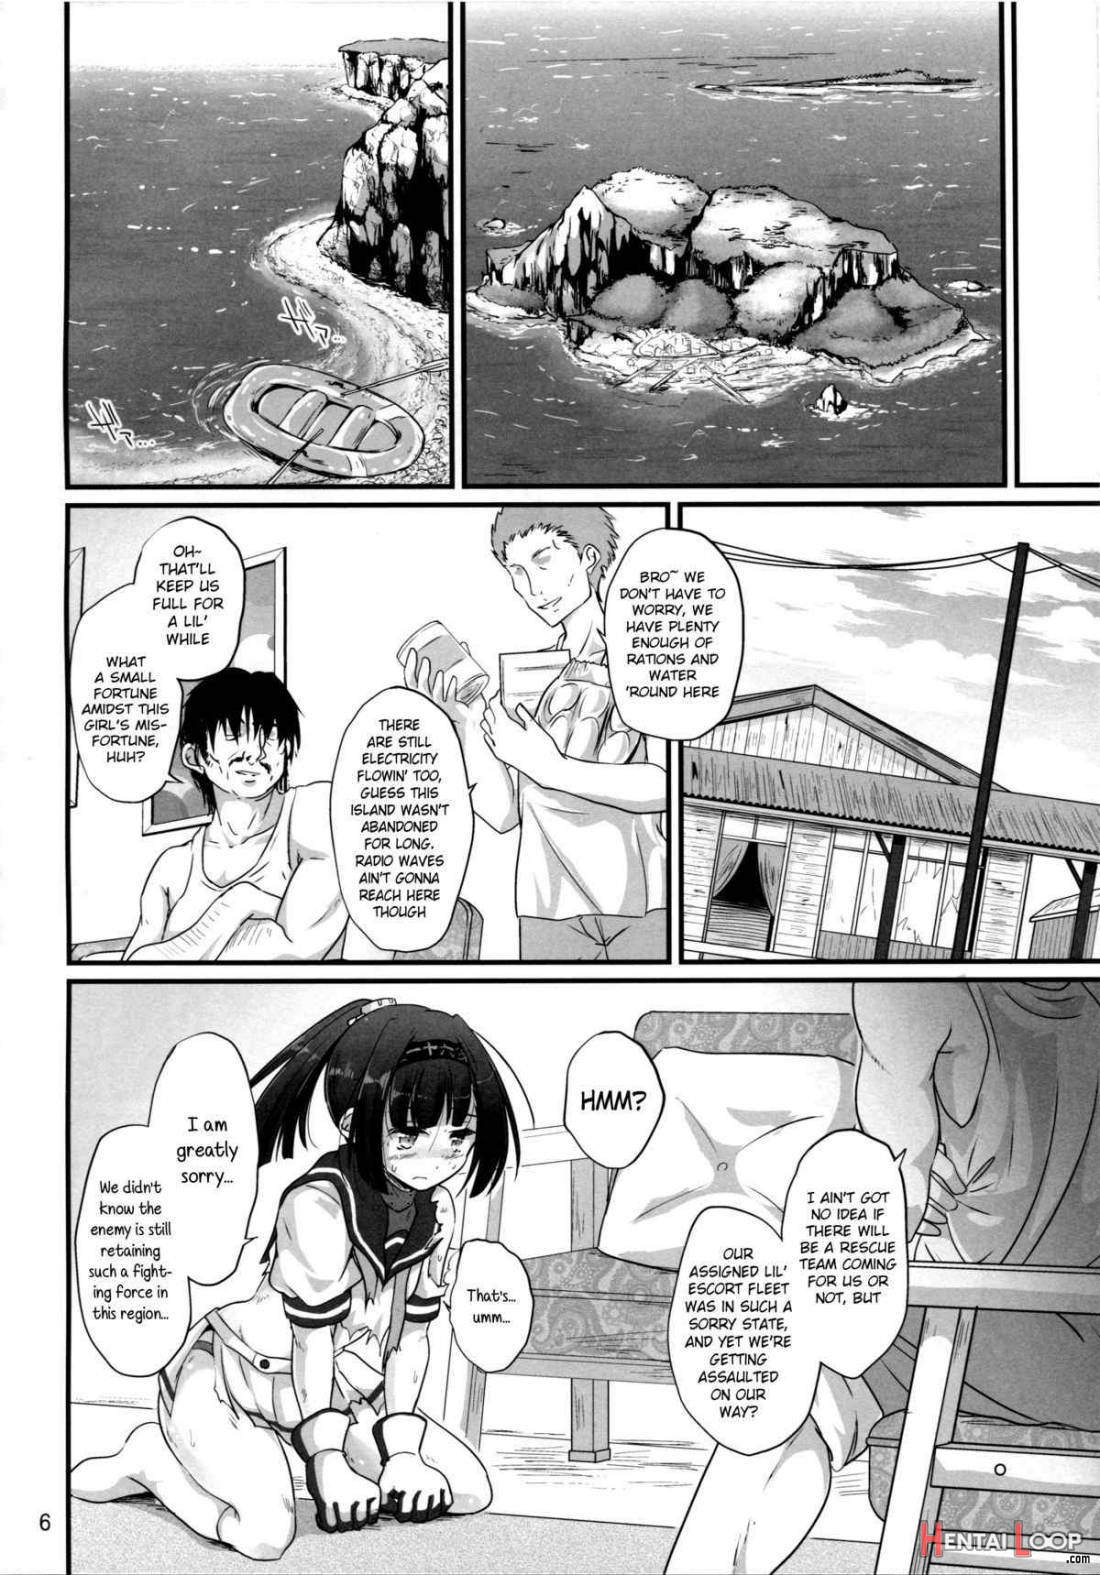 Haru Wazawai Akizuki page 4